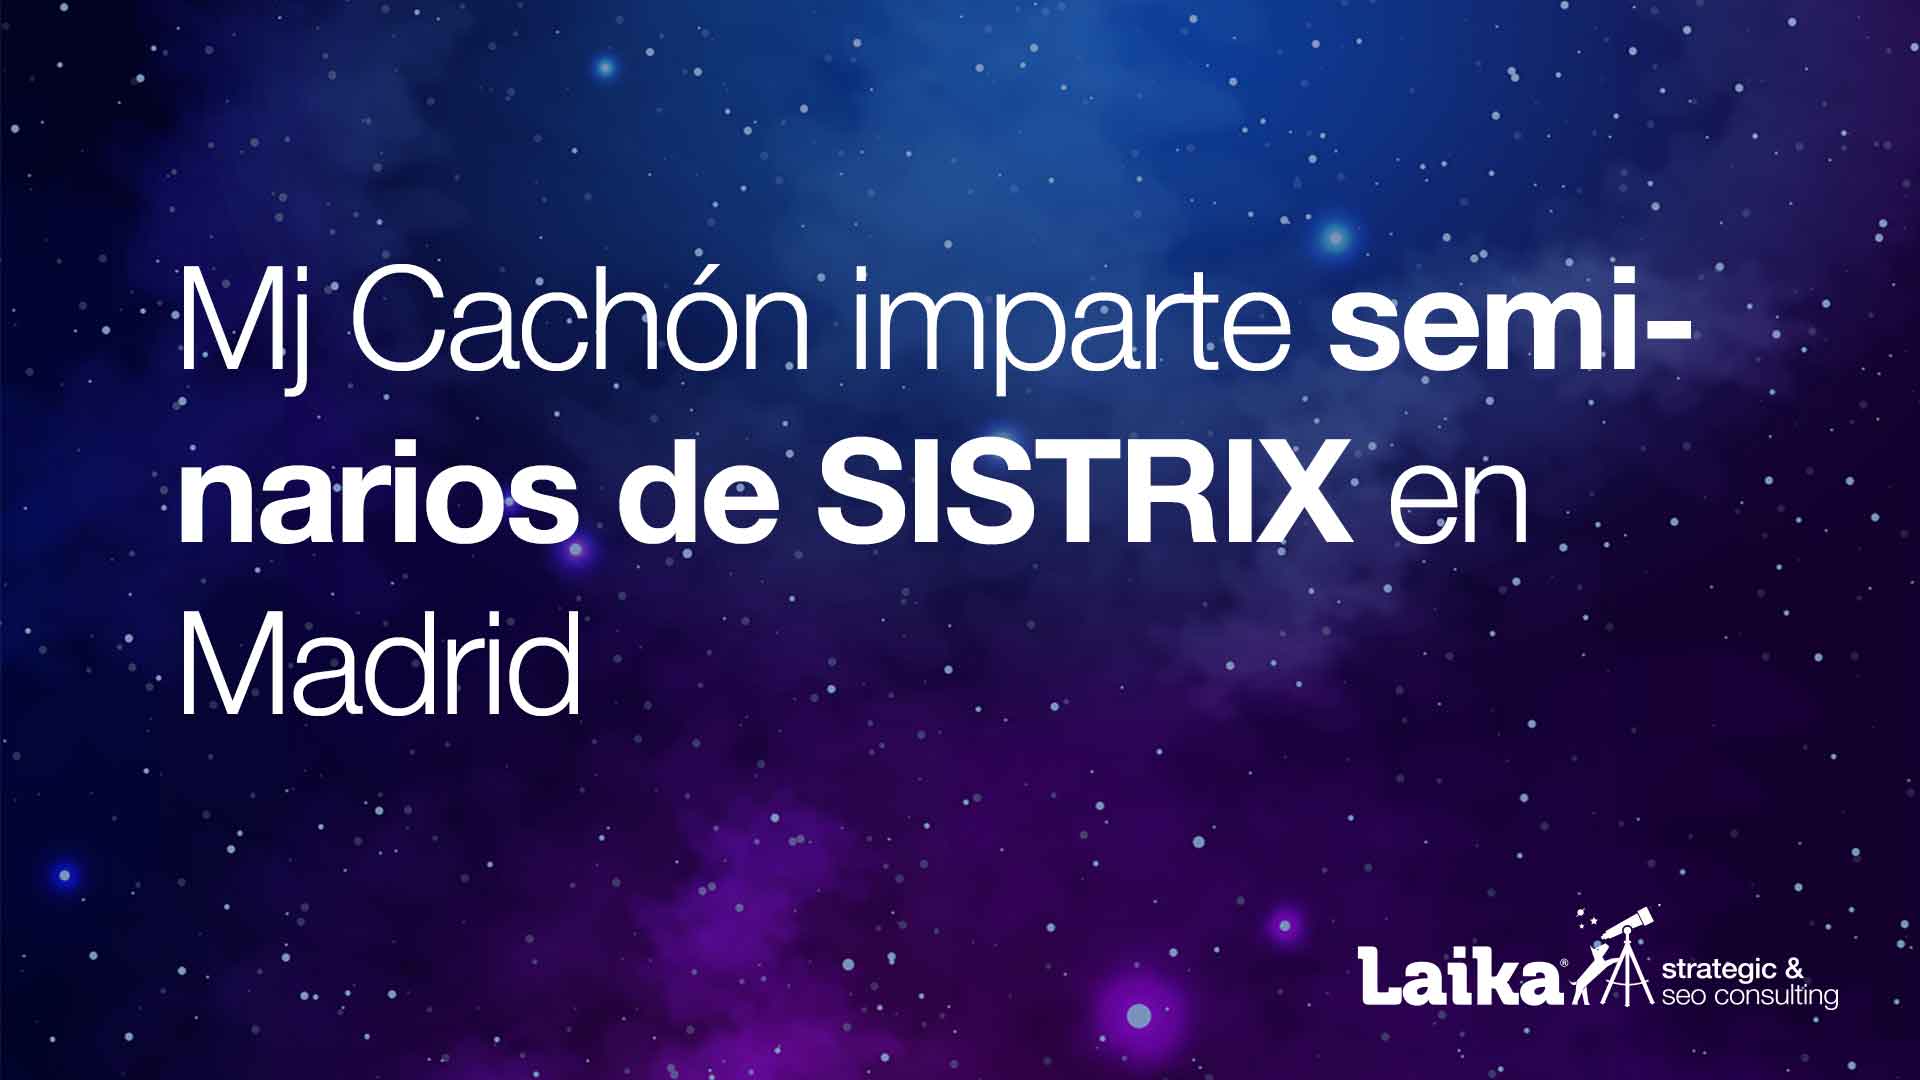 Mj Cachón imparte seminarios gratuitos de Sistrix en Madrid